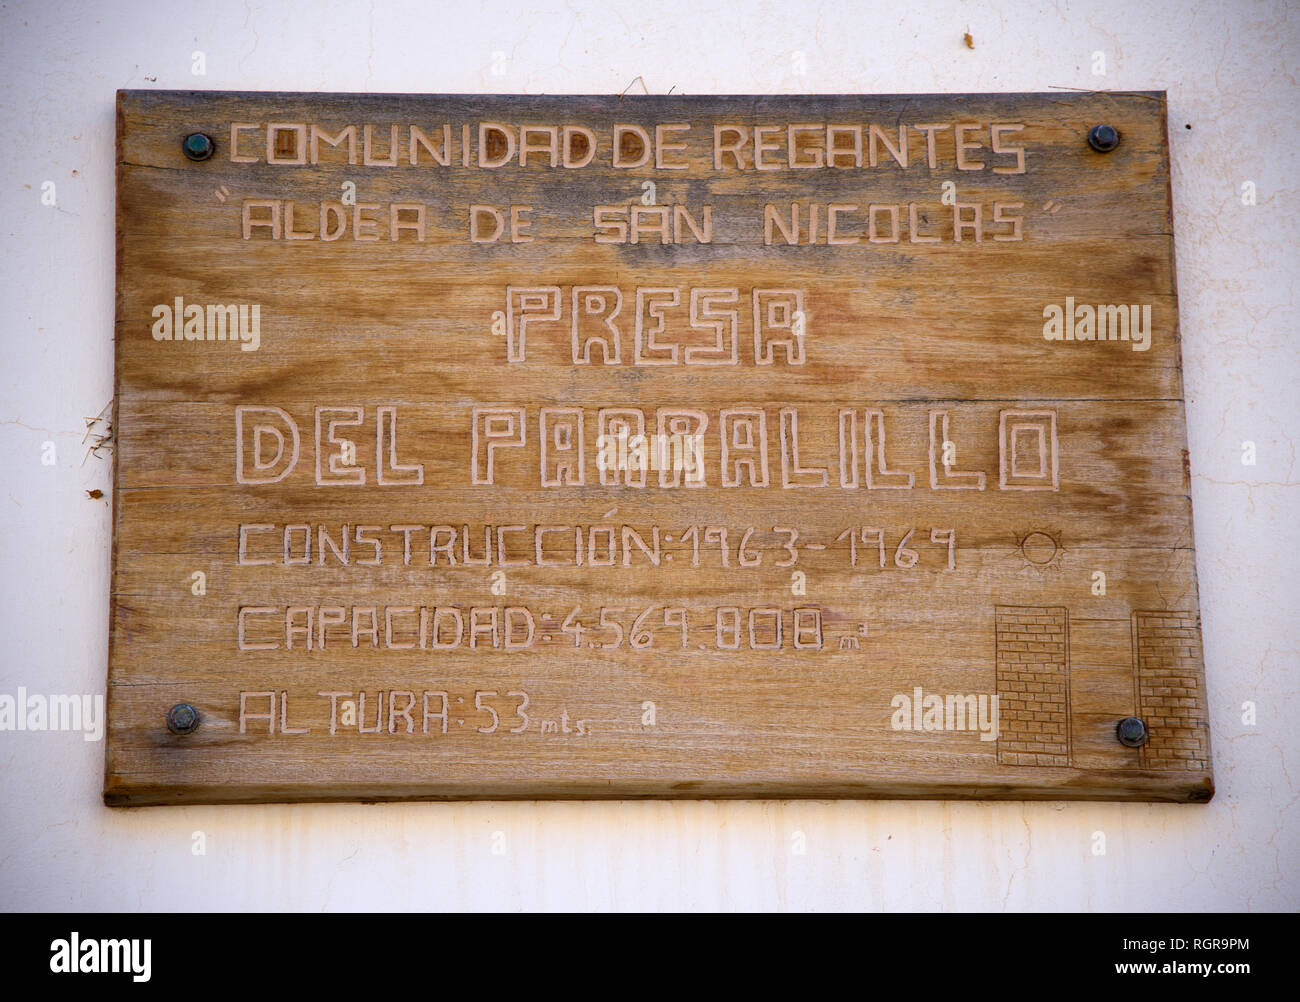 Dam information Sign , Presa Del Parralillo, 53 m , Gran Canaria, Spain Stock Photo